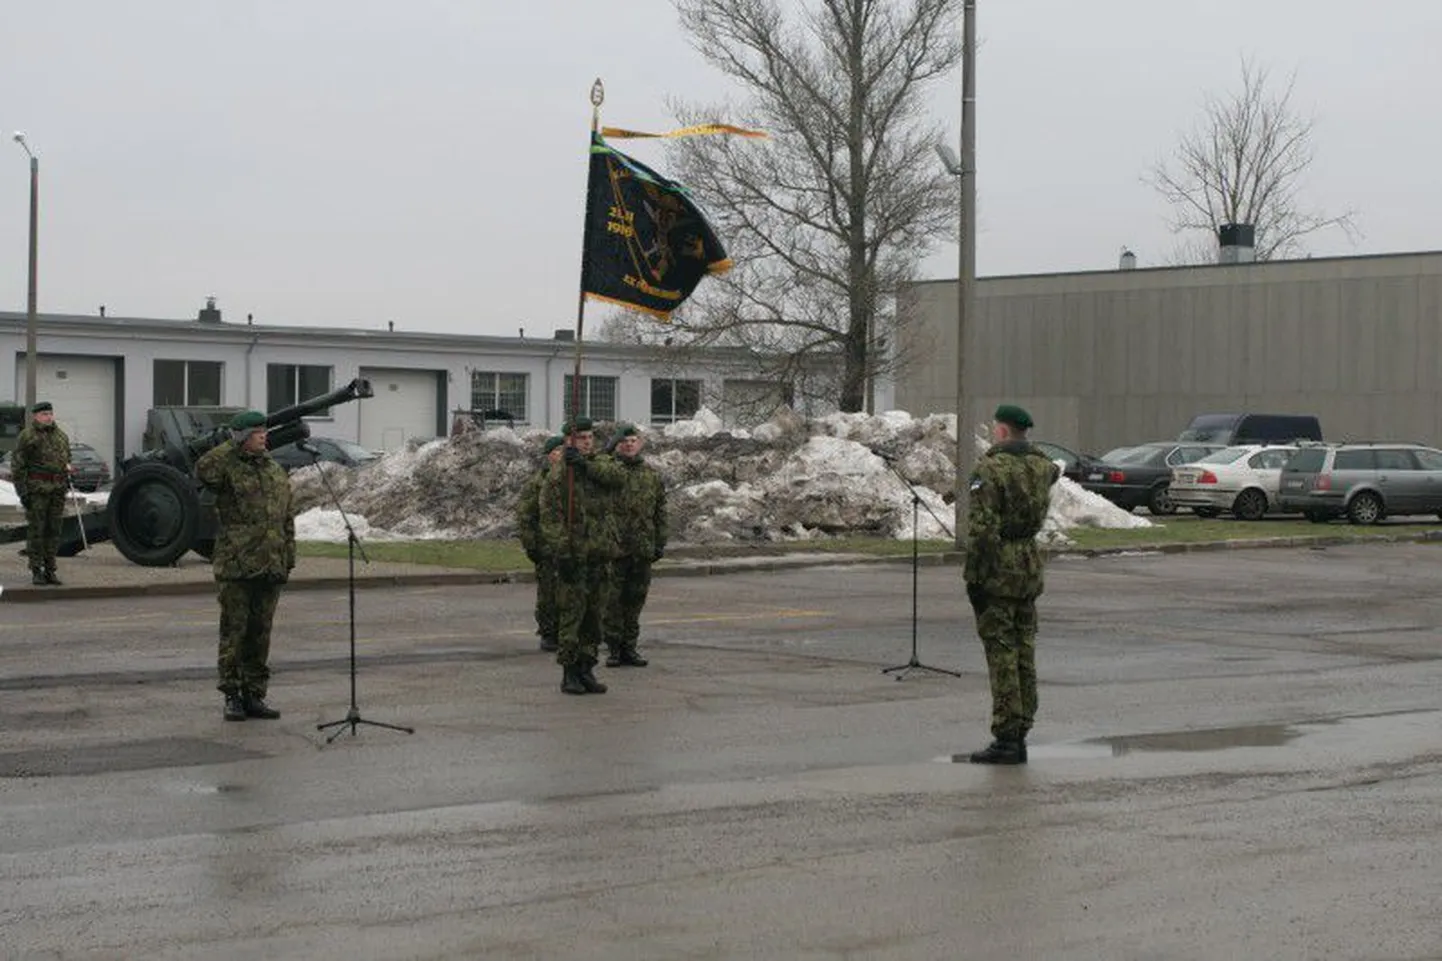 Rivistusel andis toetuse väejuhatuse ülem auastmekõrgendust saanud kaitseväelastele üle uued auastmetunnused.